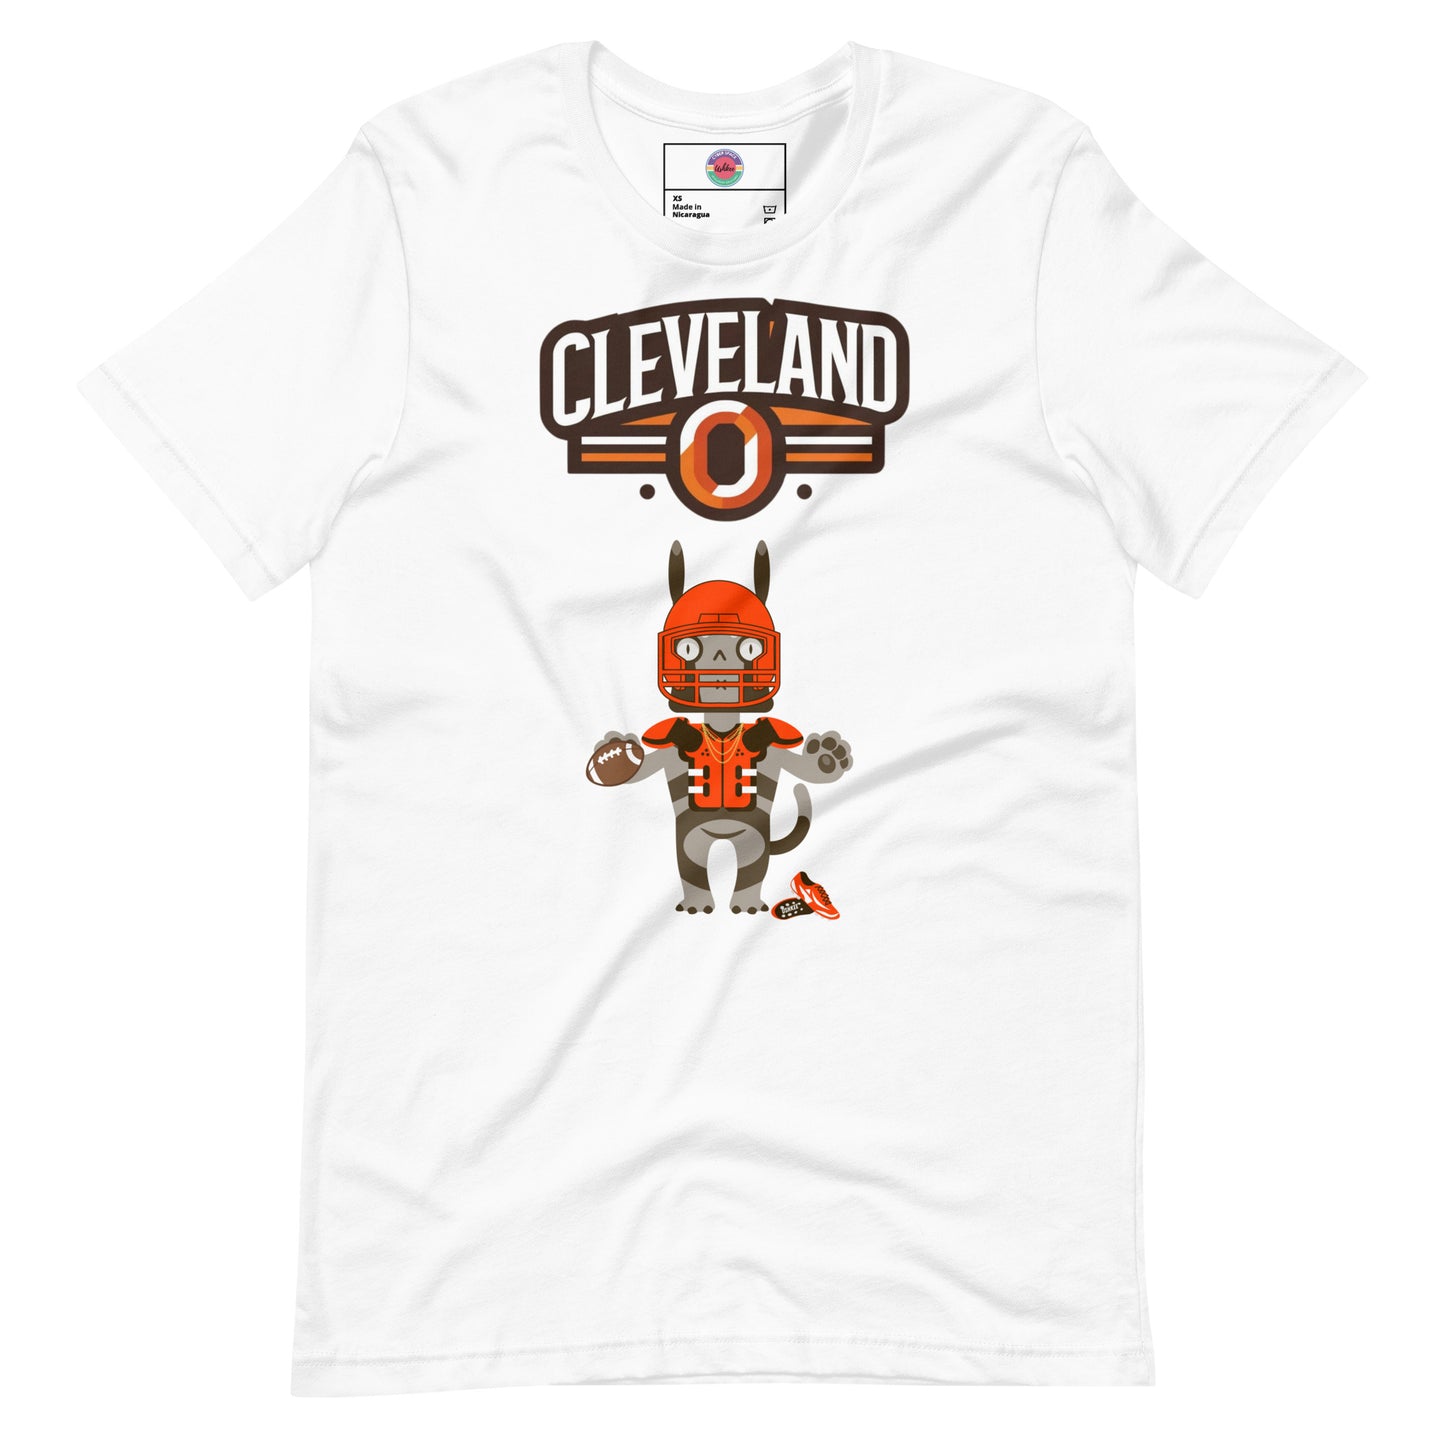 Cleveland O F Unisex t-shirt